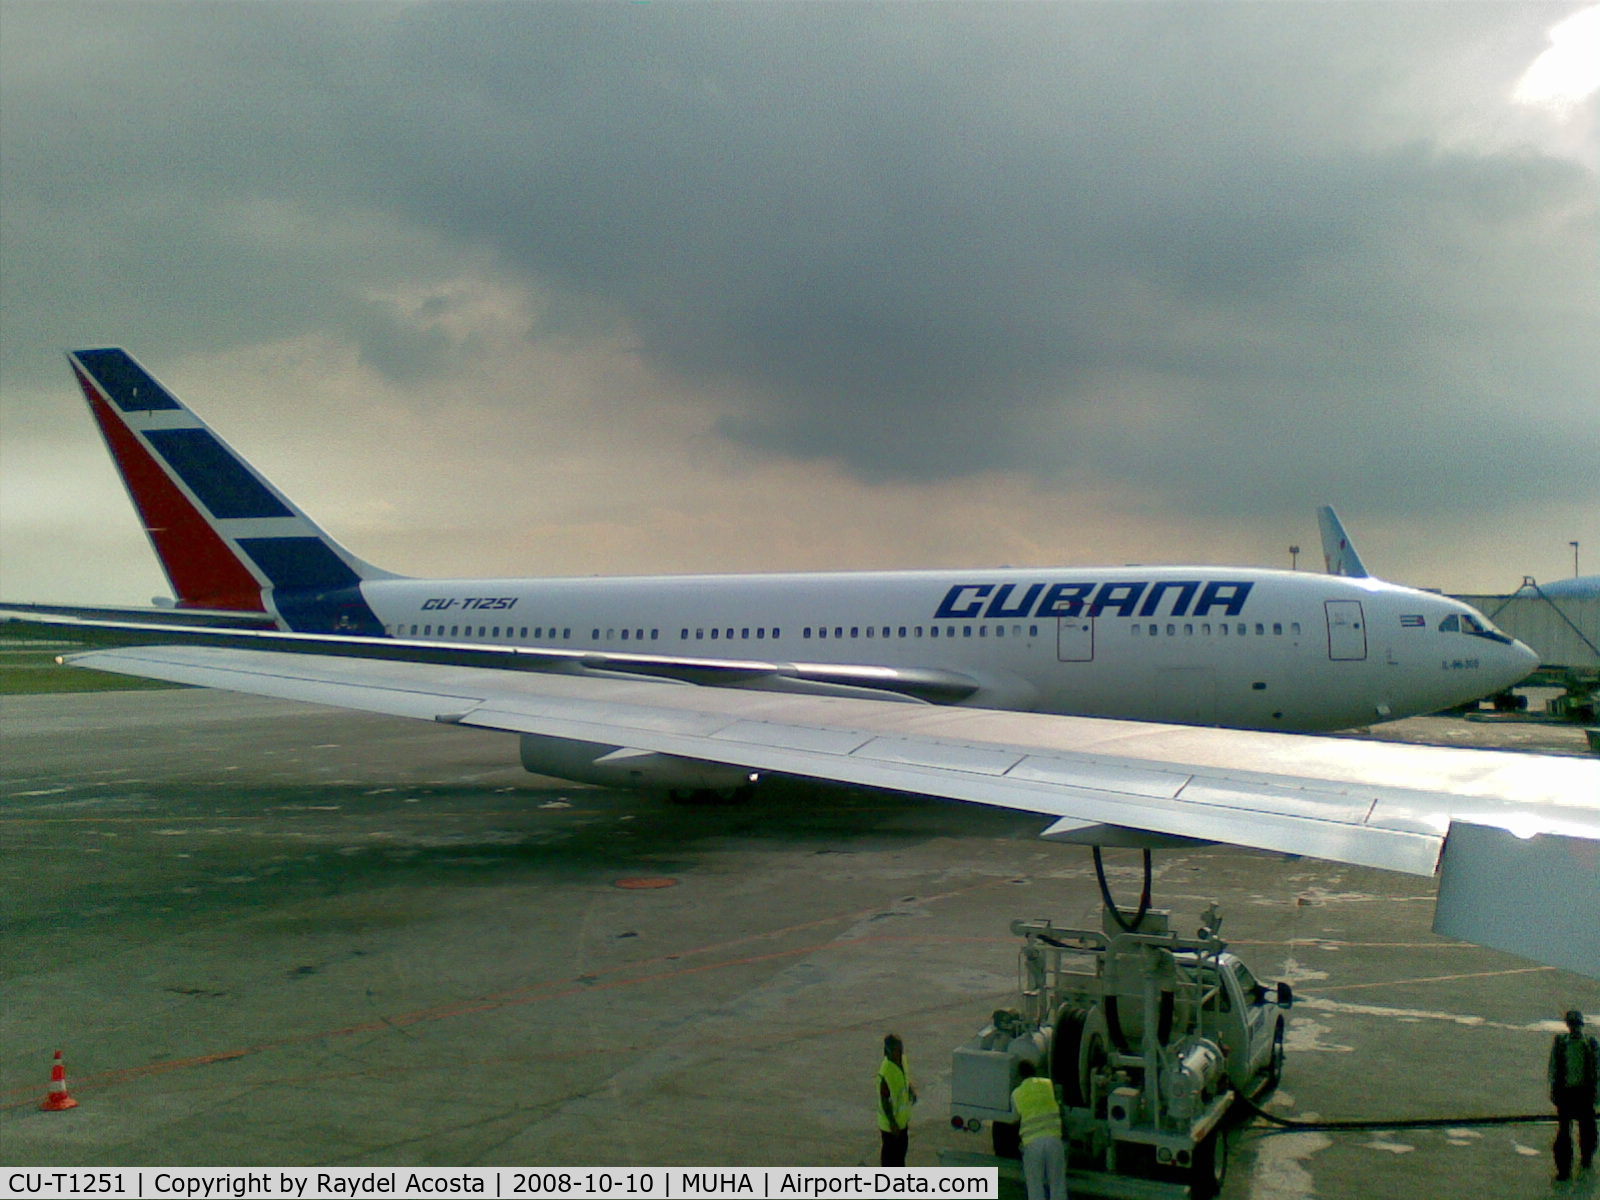 CU-T1251, 2006 Ilyushin IL-96-300 C/N 73393202016, IL-96-300 Cubana de Aviacion